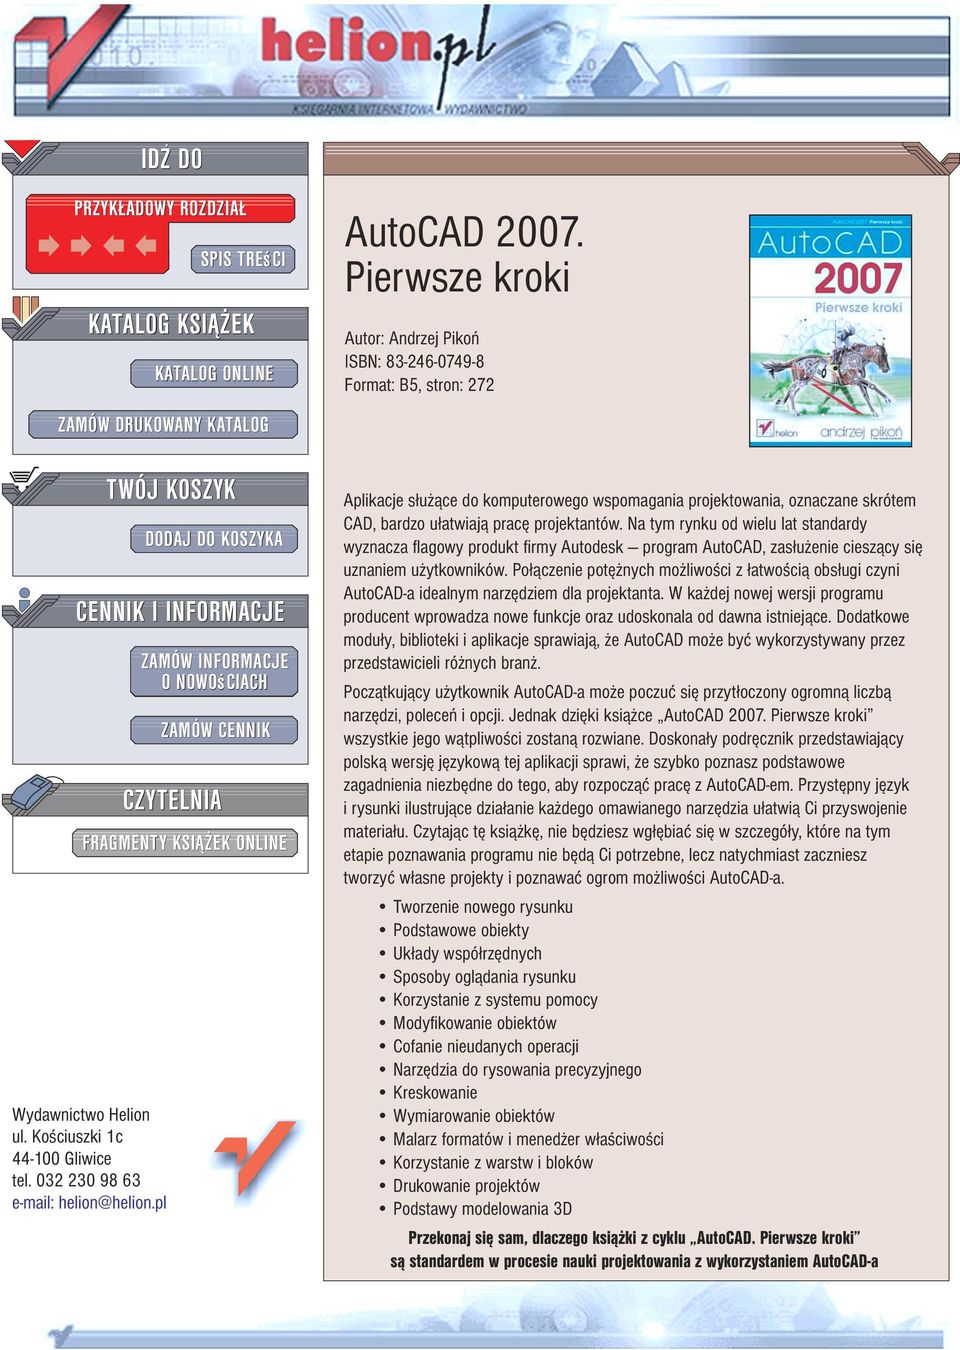 Pierwsze kroki Autor: Andrzej Pikoñ ISBN: 83-246-0749-8 Format: B5, stron: 272 Aplikacje s³u ¹ce do komputerowego wspomagania projektowania, oznaczane skrótem CAD, bardzo u³atwiaj¹ pracê projektantów.